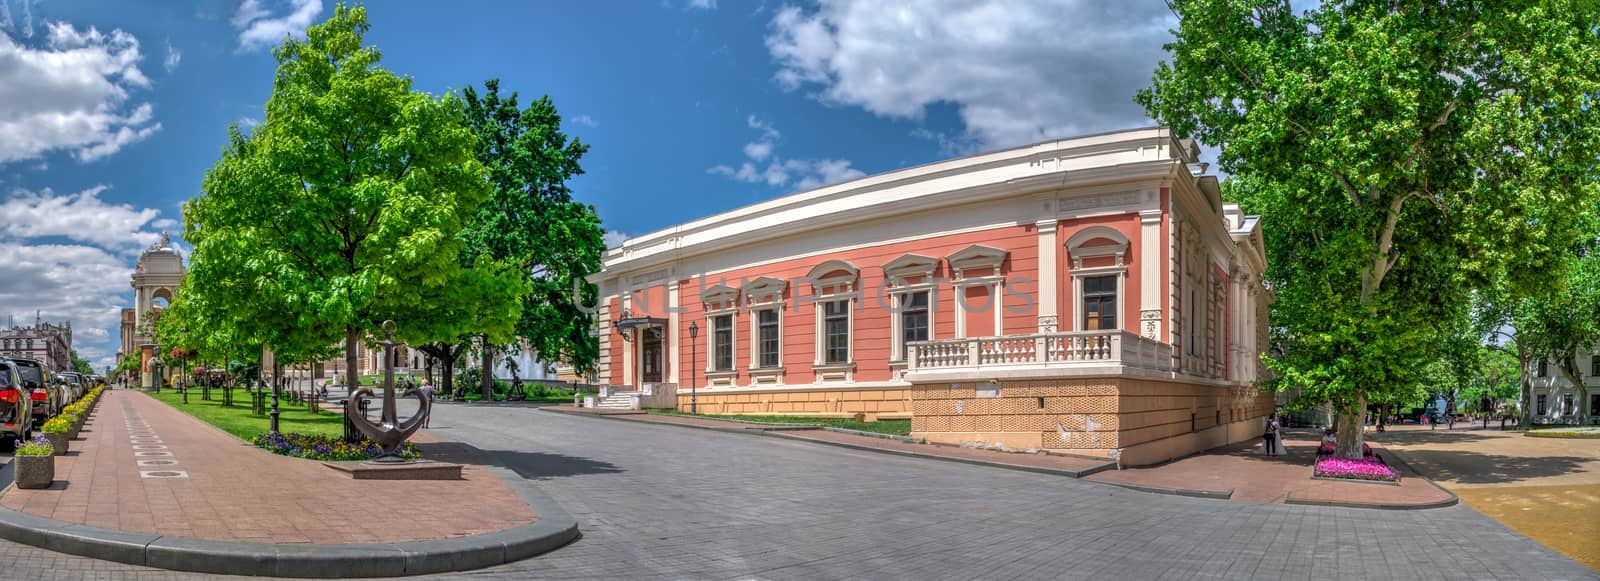 Theater Square in Odessa, Ukraine by Multipedia